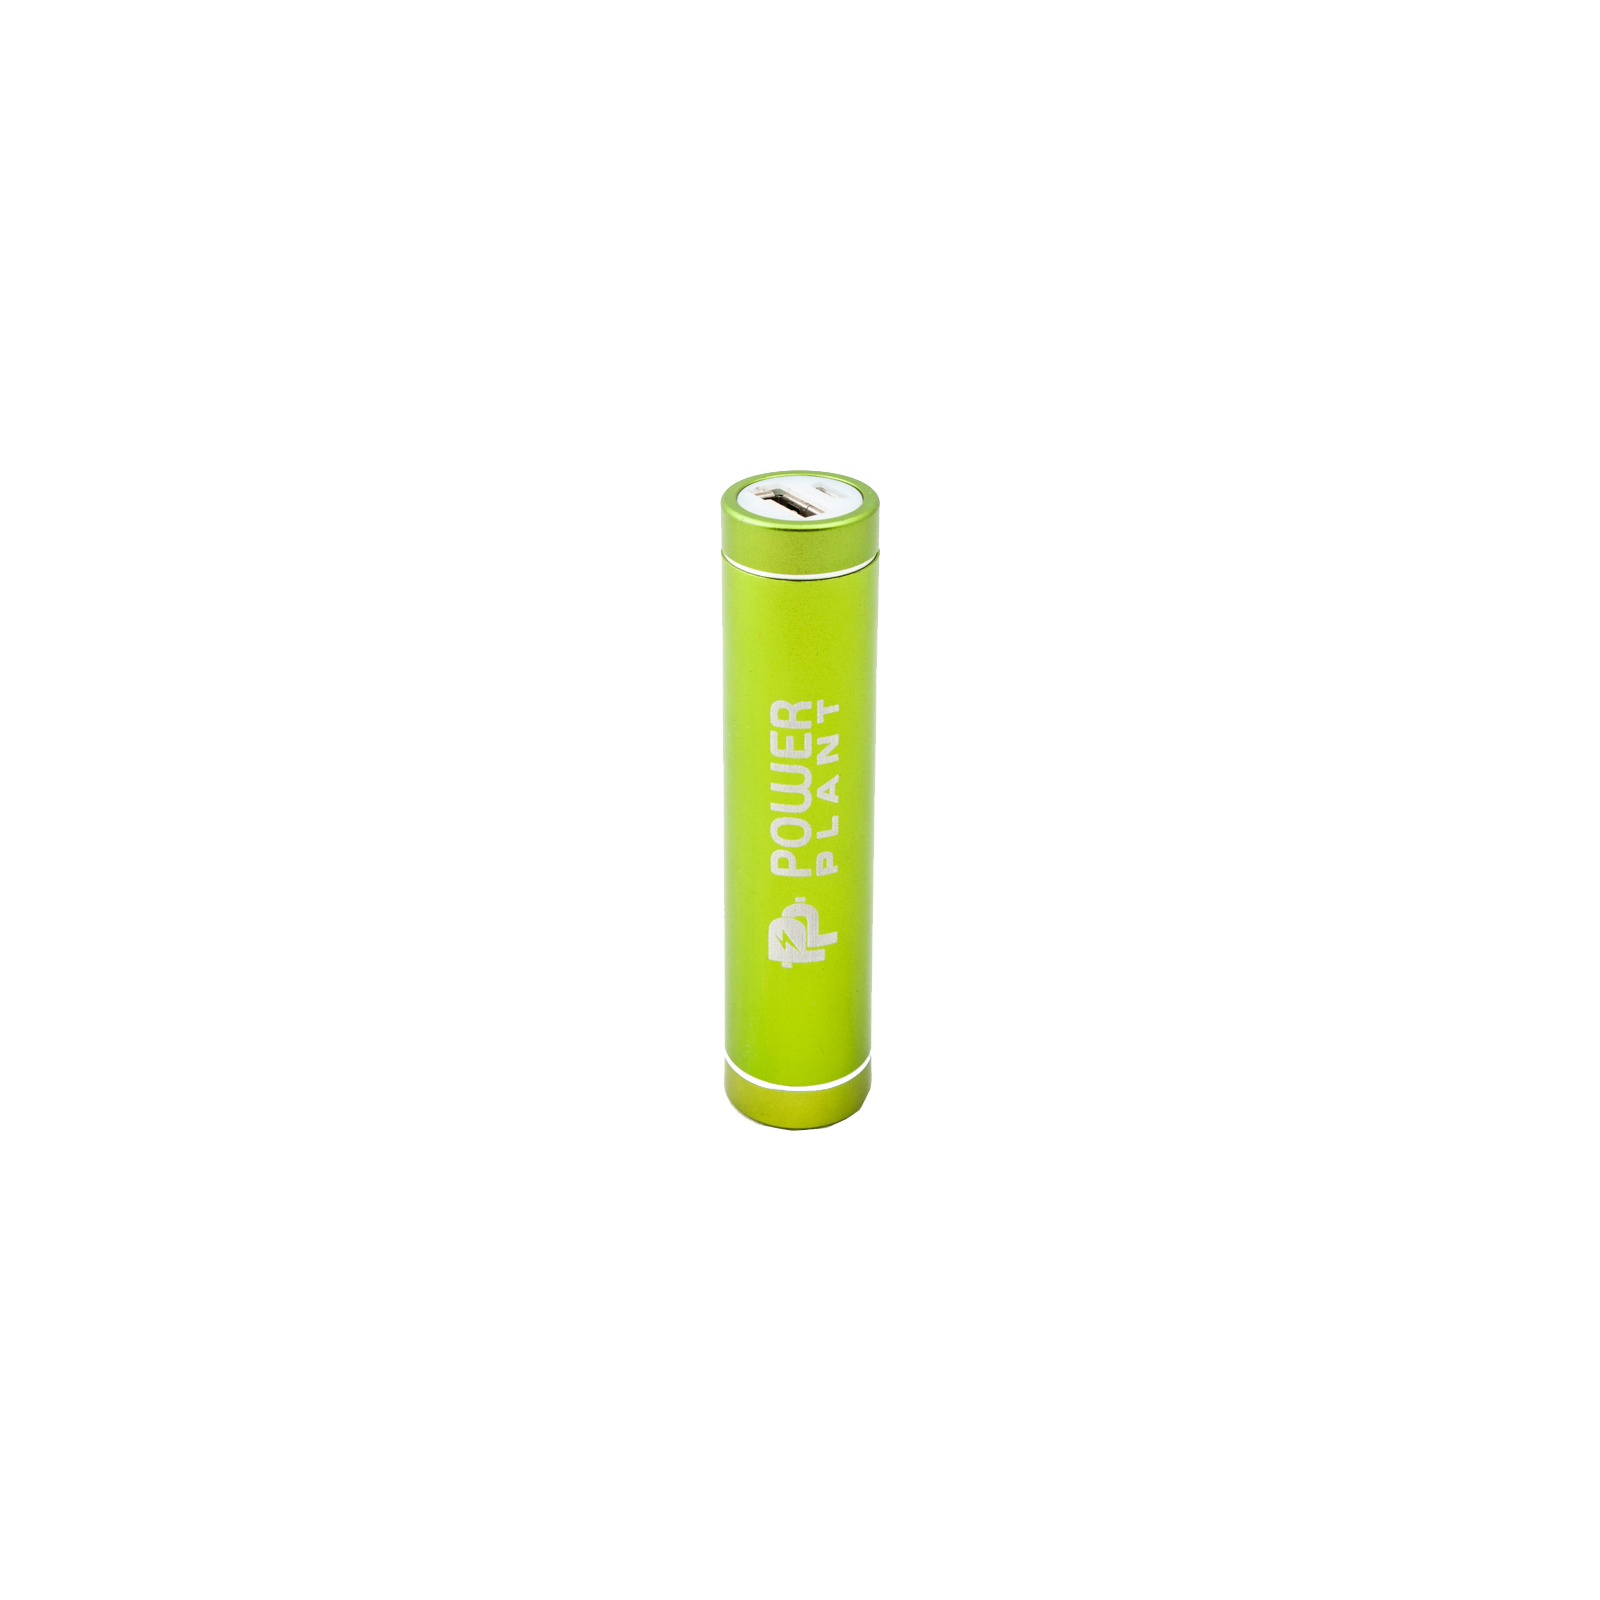 Батарея универсальная PowerPlant PB-LA103, 2600mAh (PPLA103) изображение 2